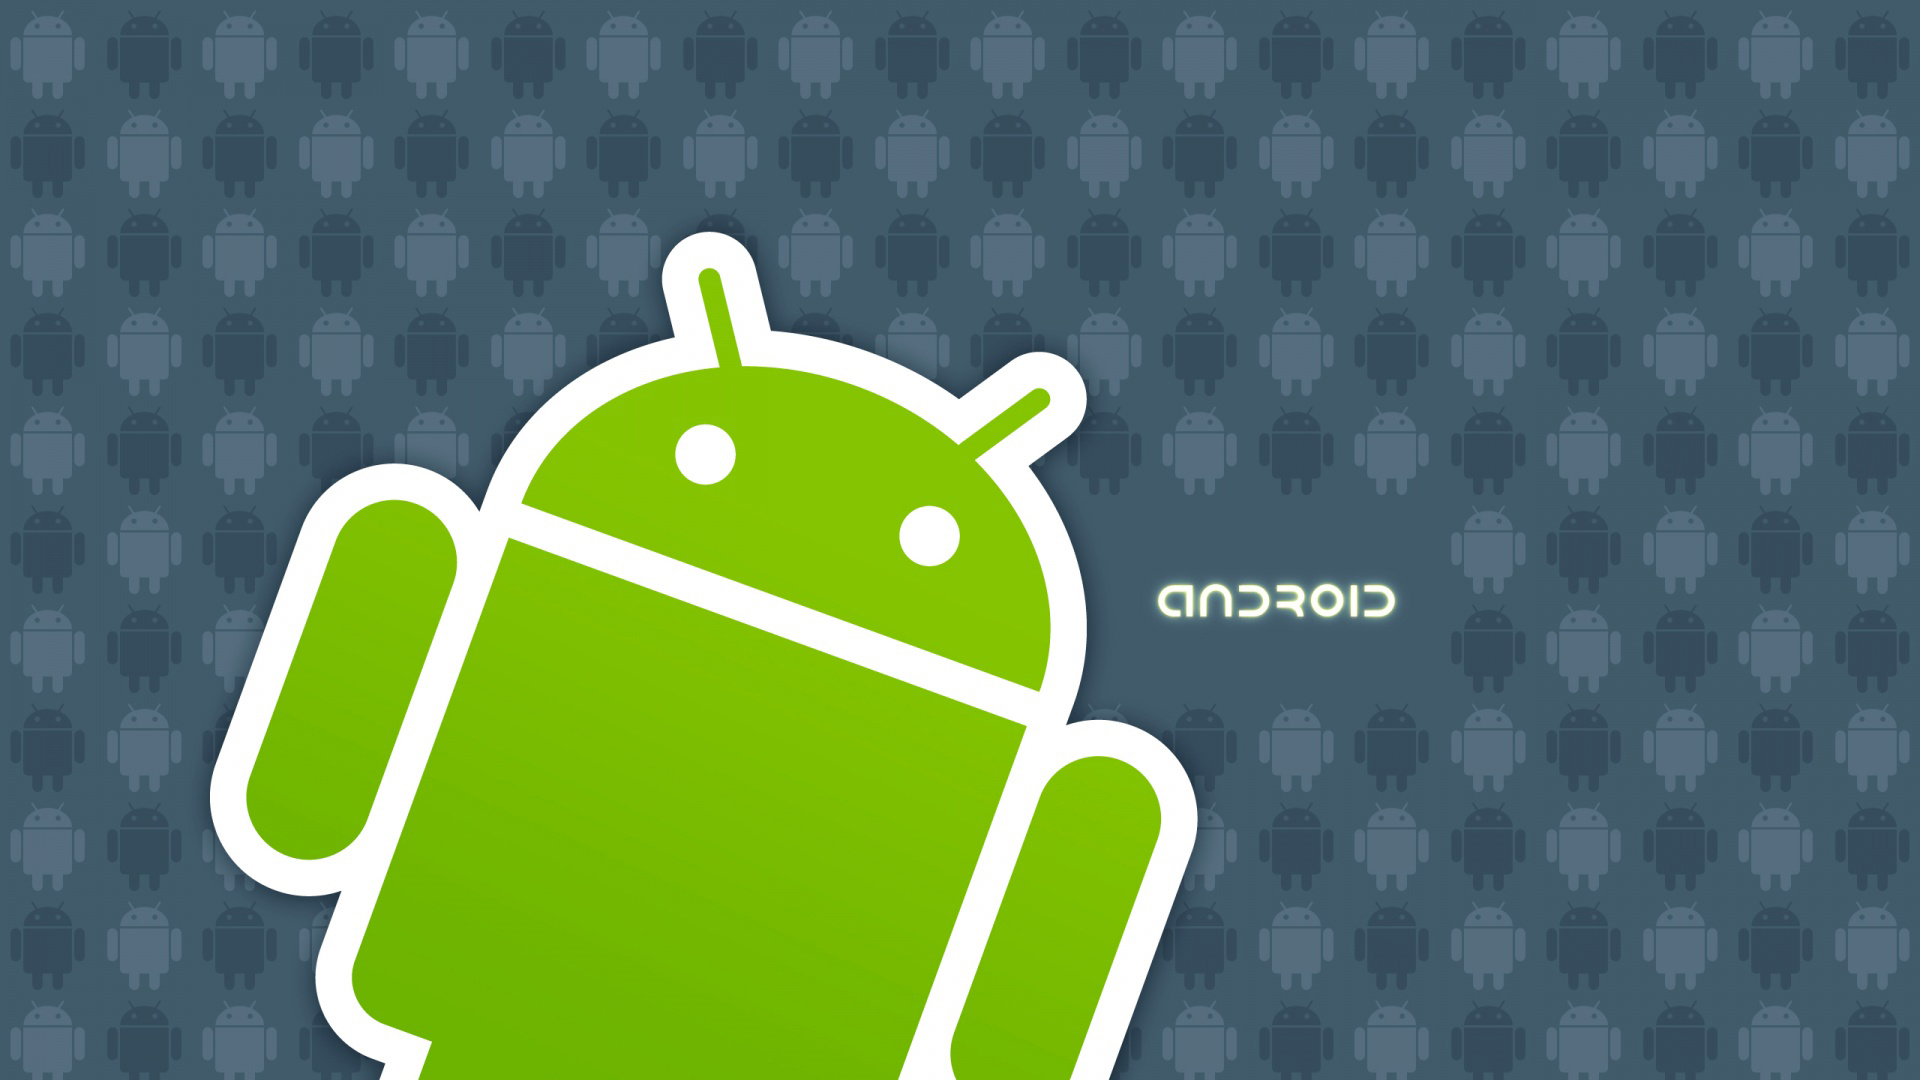 Android s android t. Андроид. Логотип андроид. Изображение андроида. Андро.